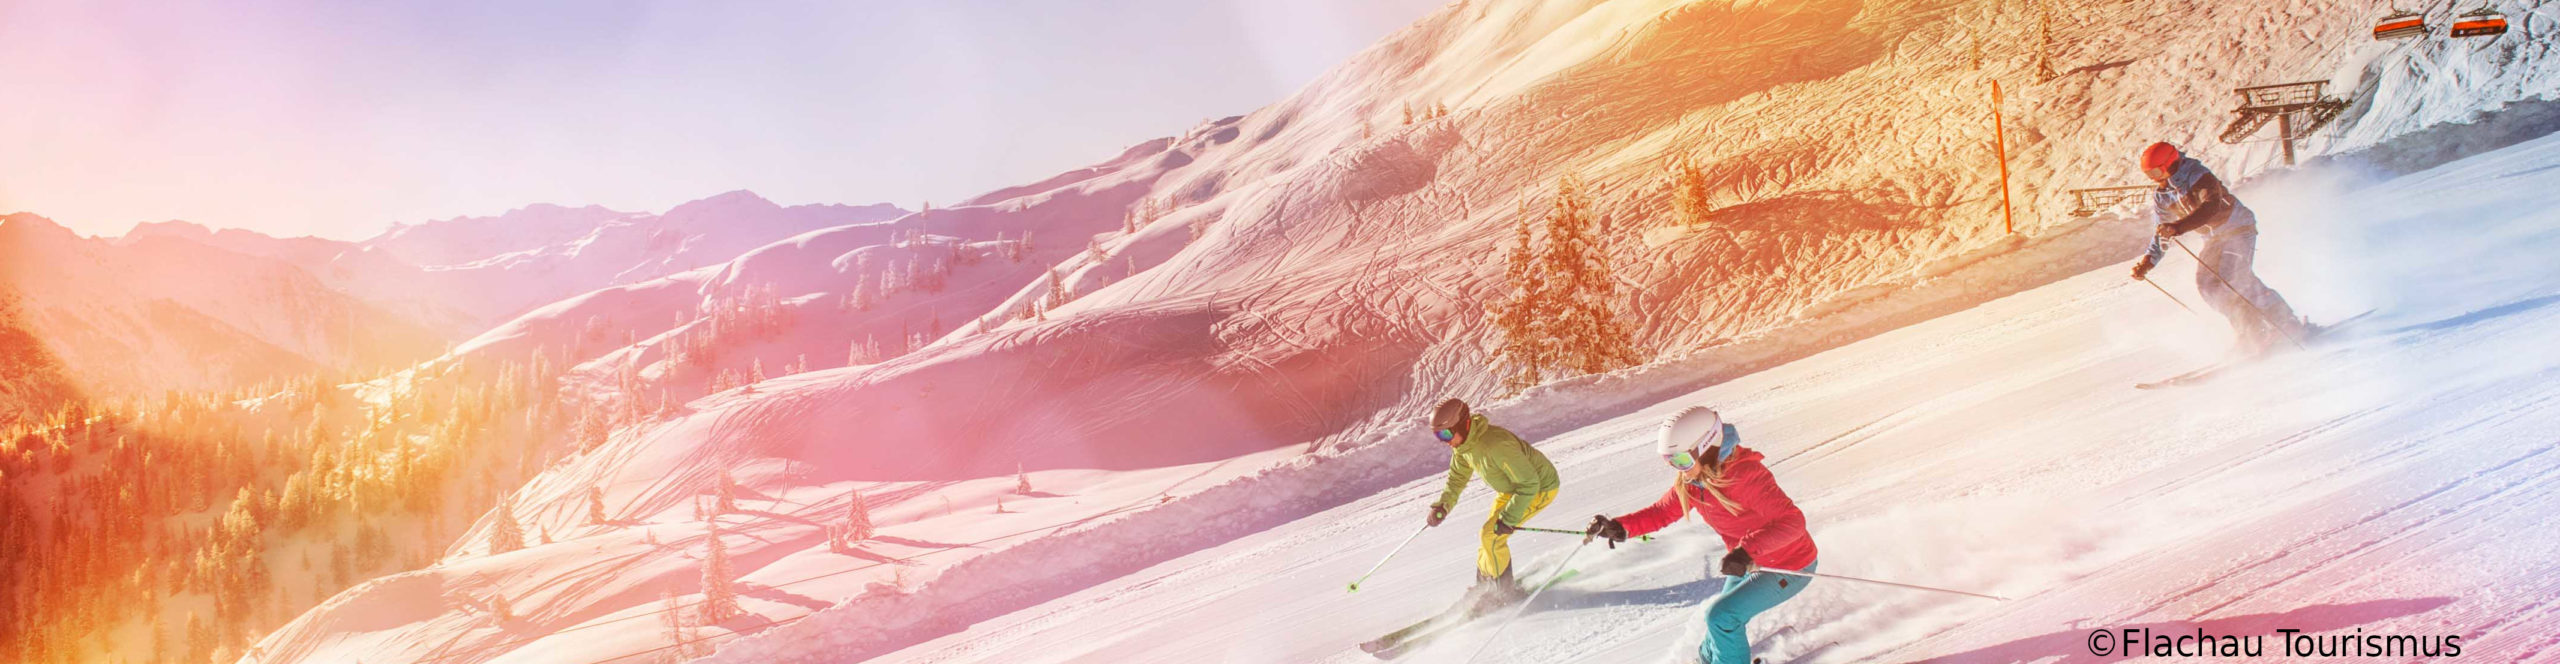 FLACHAU – ZAUCHENSEE – Ski Amadé – SkiWochenende – PistenSpaß in der 3 Täler Skischaukel 